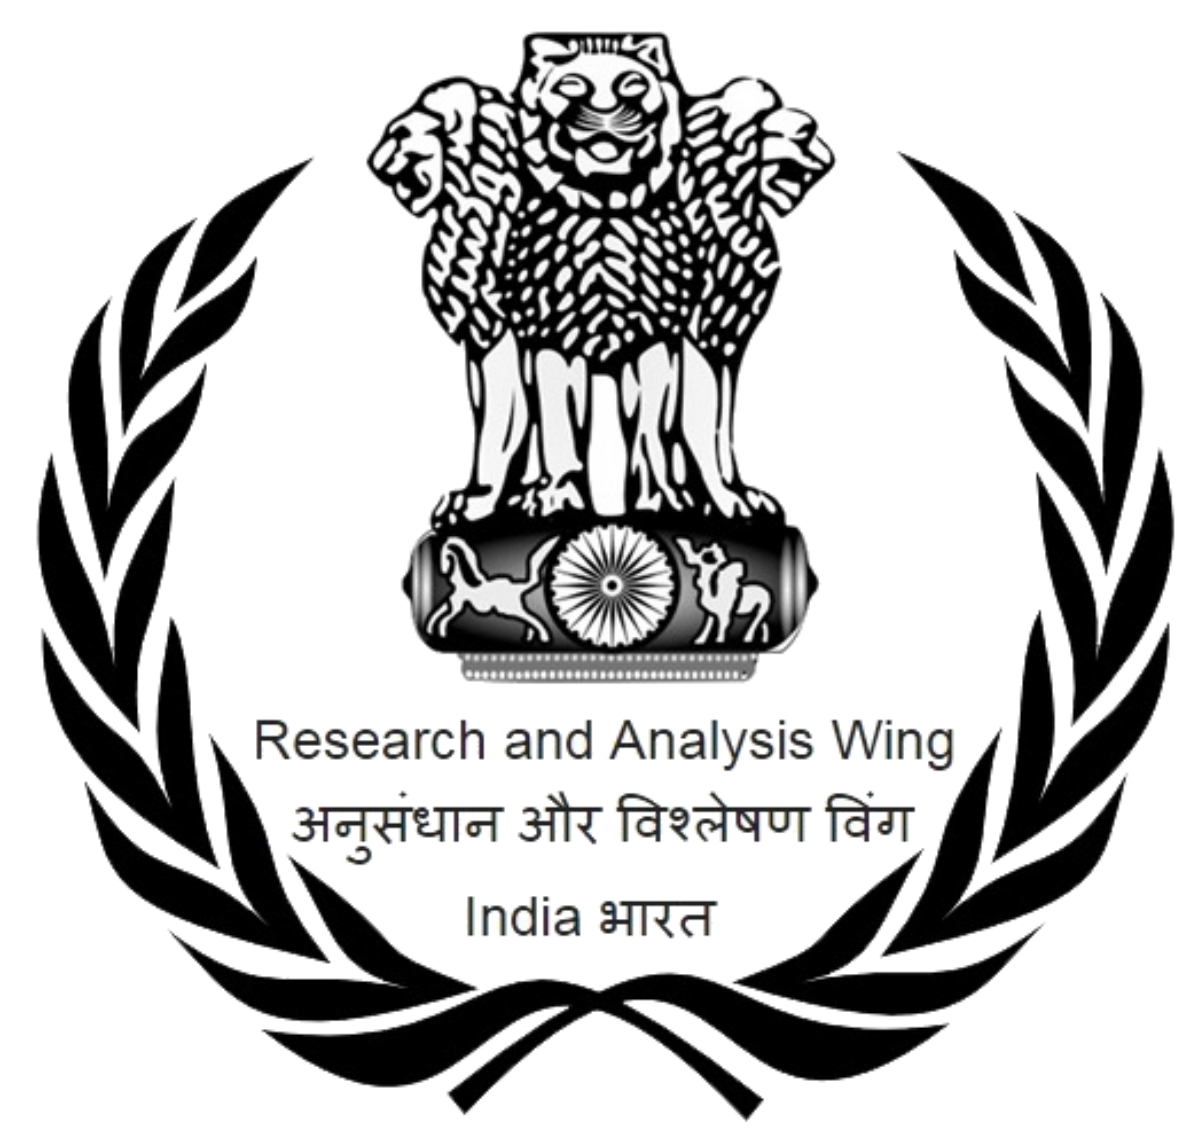 भारतिय खुफिया एजेन्सी “र” को चाहनामा मलजल गदै नेताहरु